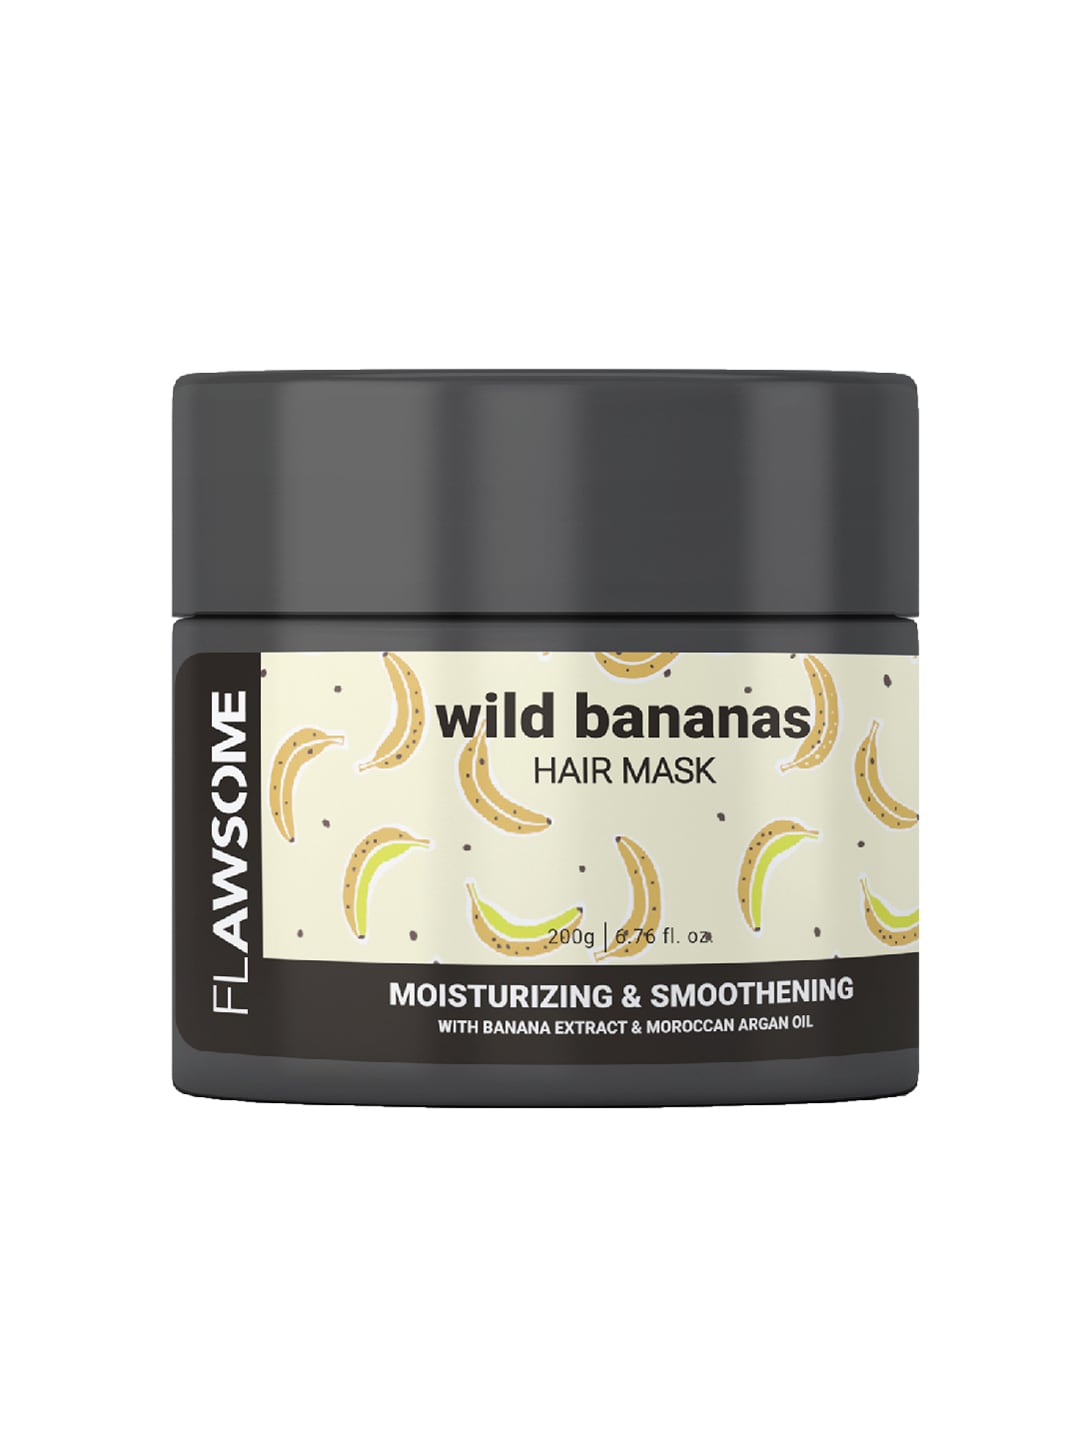 Flawsome Unisex Wild Bananas Moisturizing & Smoothening Hair Mask Price in India